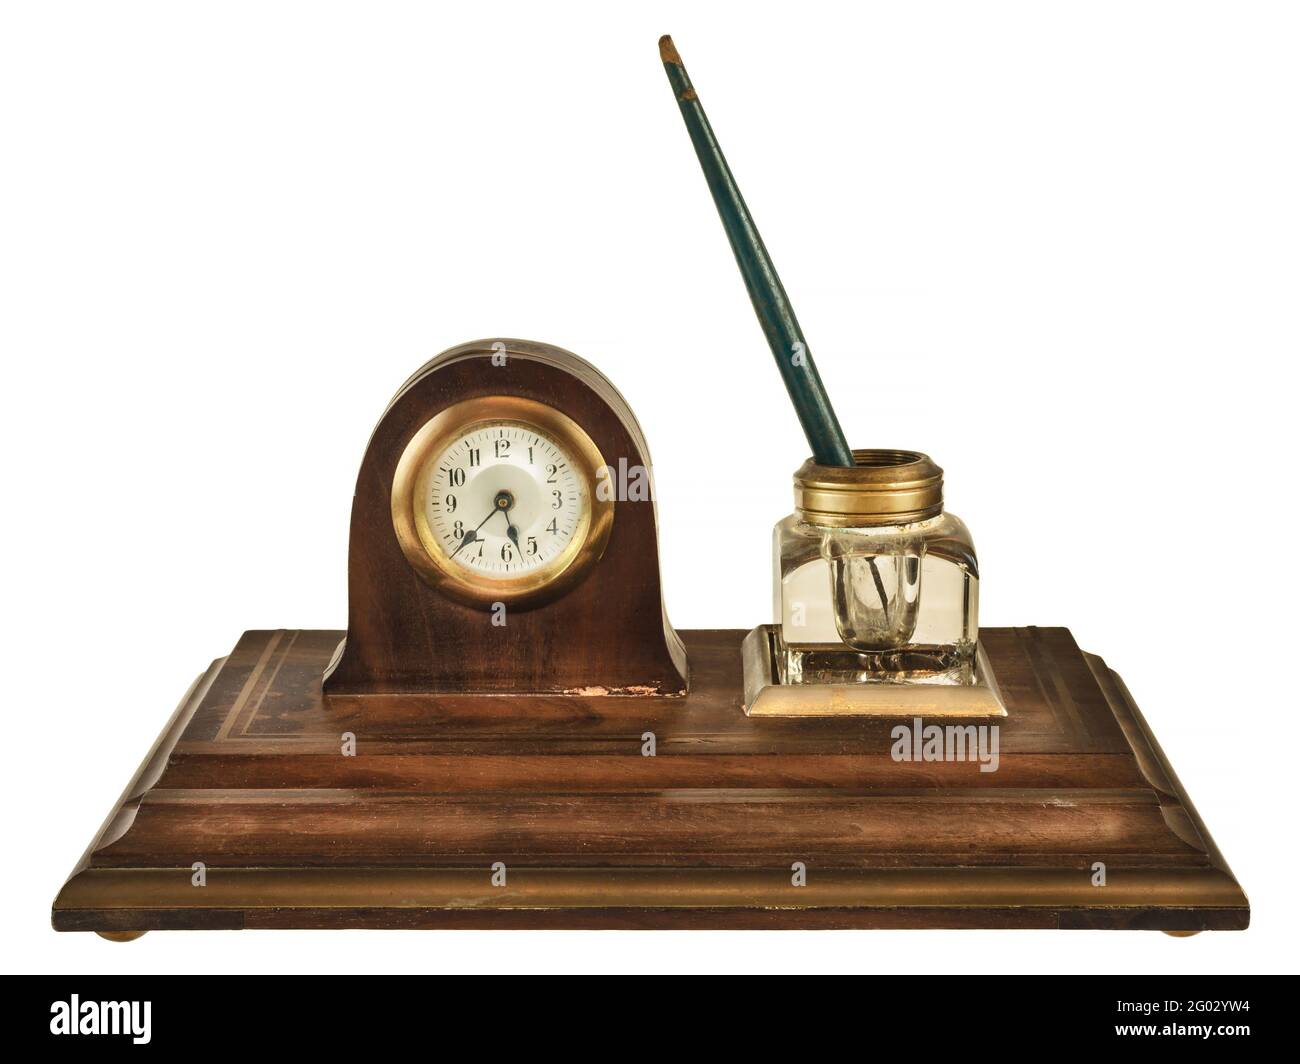 Meuble d'encre antique avec stylo, pot d'encre en verre et petite horloge isolée sur fond blanc Banque D'Images